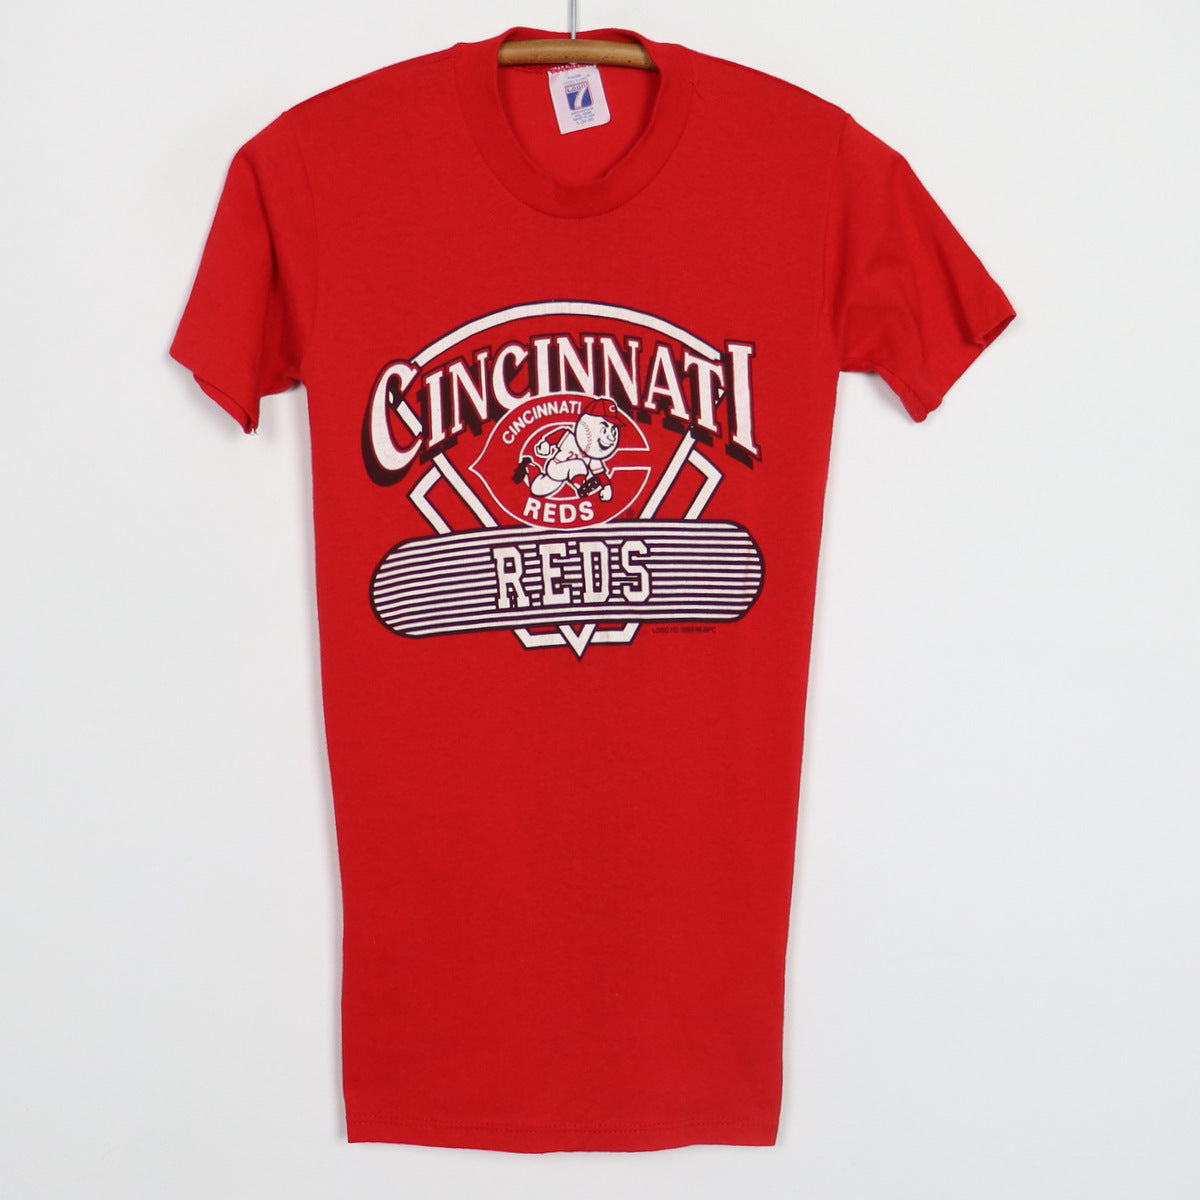 1988 Cincinnati Reds MLB Baseball Shirt